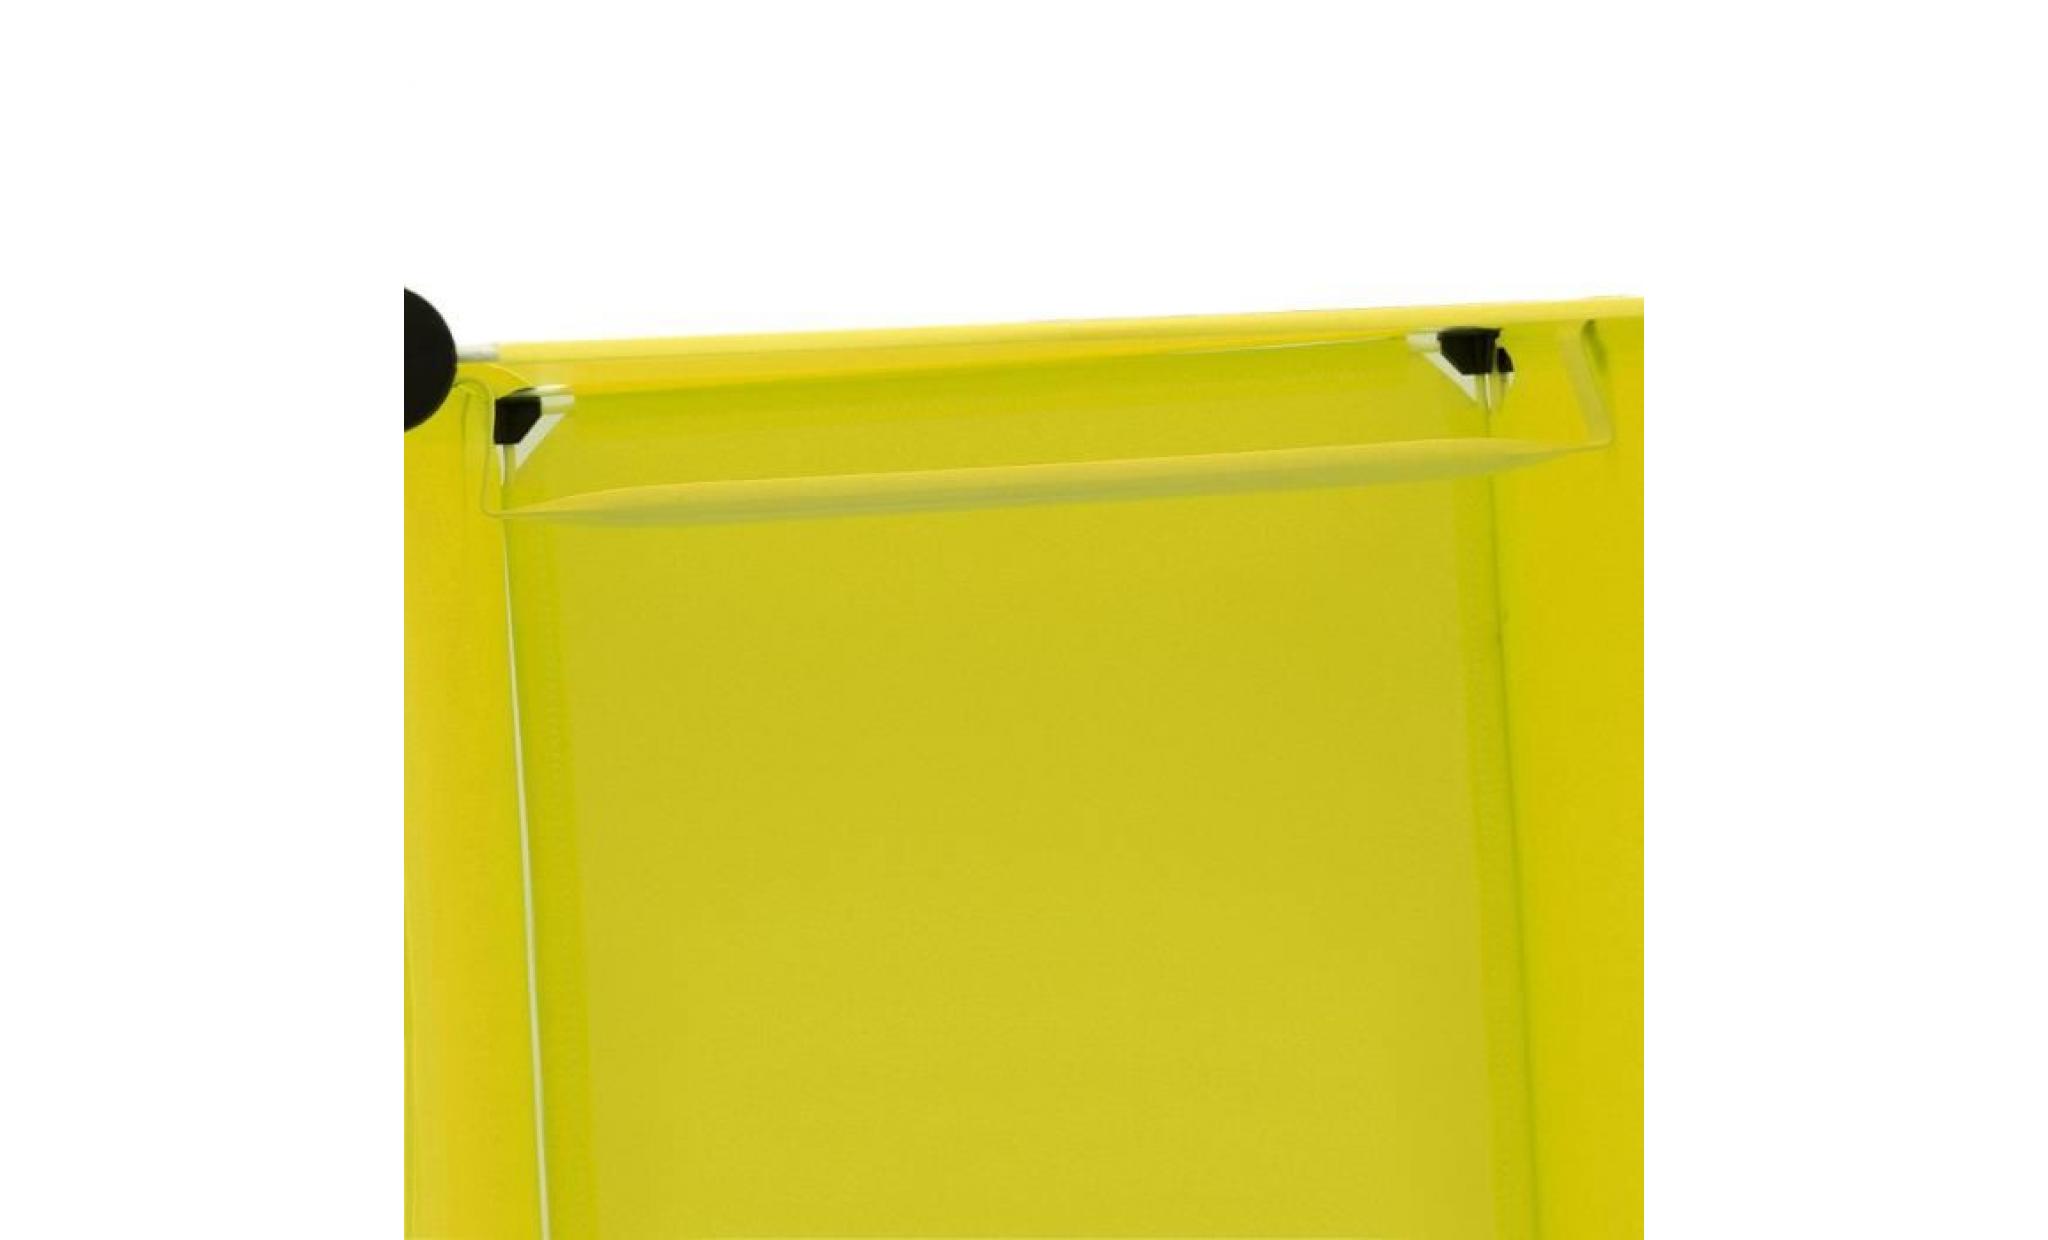 armoire en resine 12 grilles  simple jaune,placard de rangement grande rectangulaire pas cher